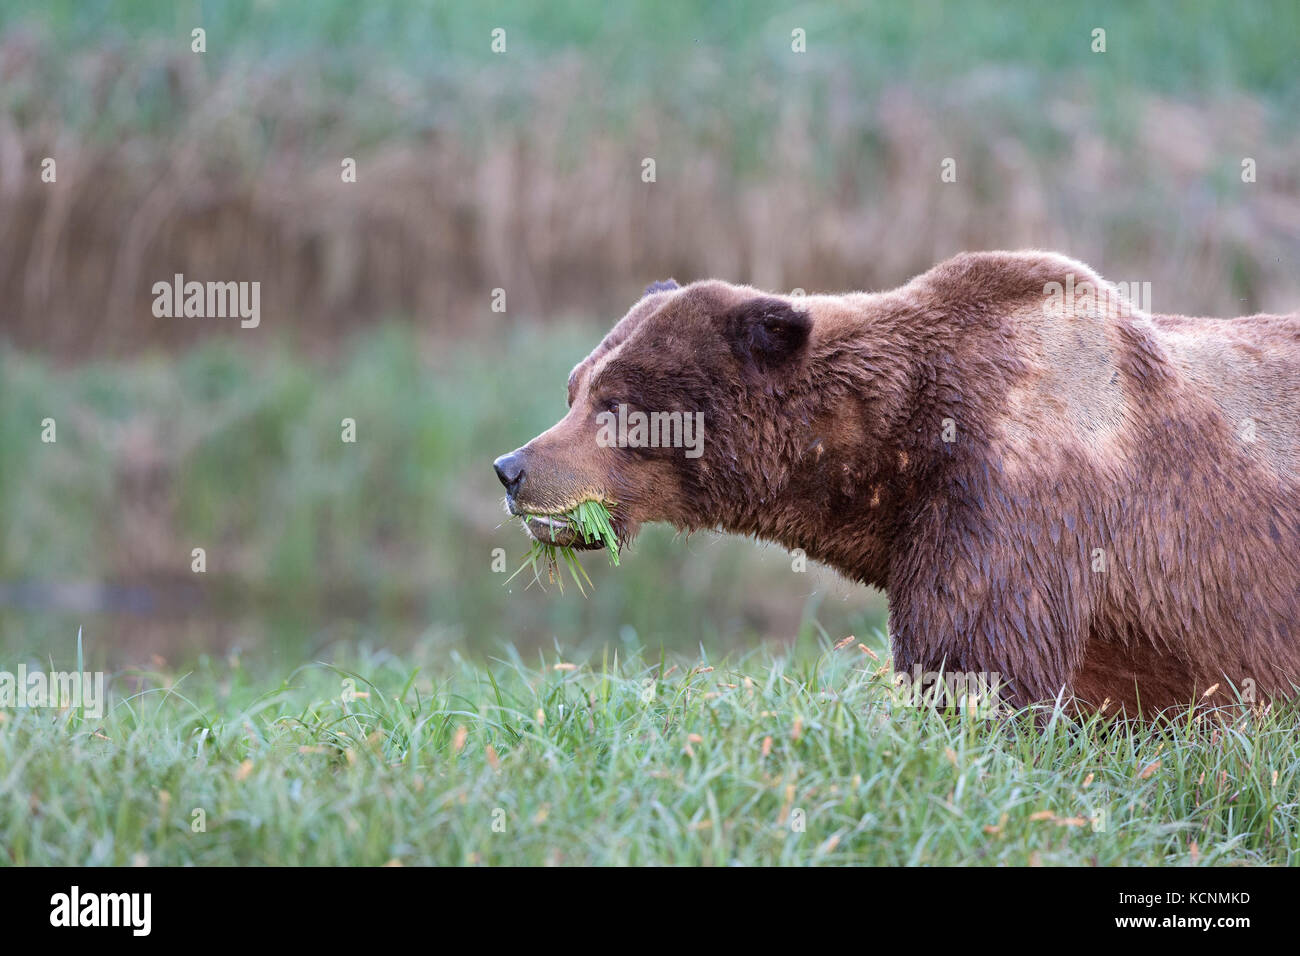 Oso grizzly (Ursus arctos) horriblis, grandes cicatrices macho, comer lyngbye la juncia (Carex kwinimass lyngbye), estuario, British Columbia, Canadá Foto de stock